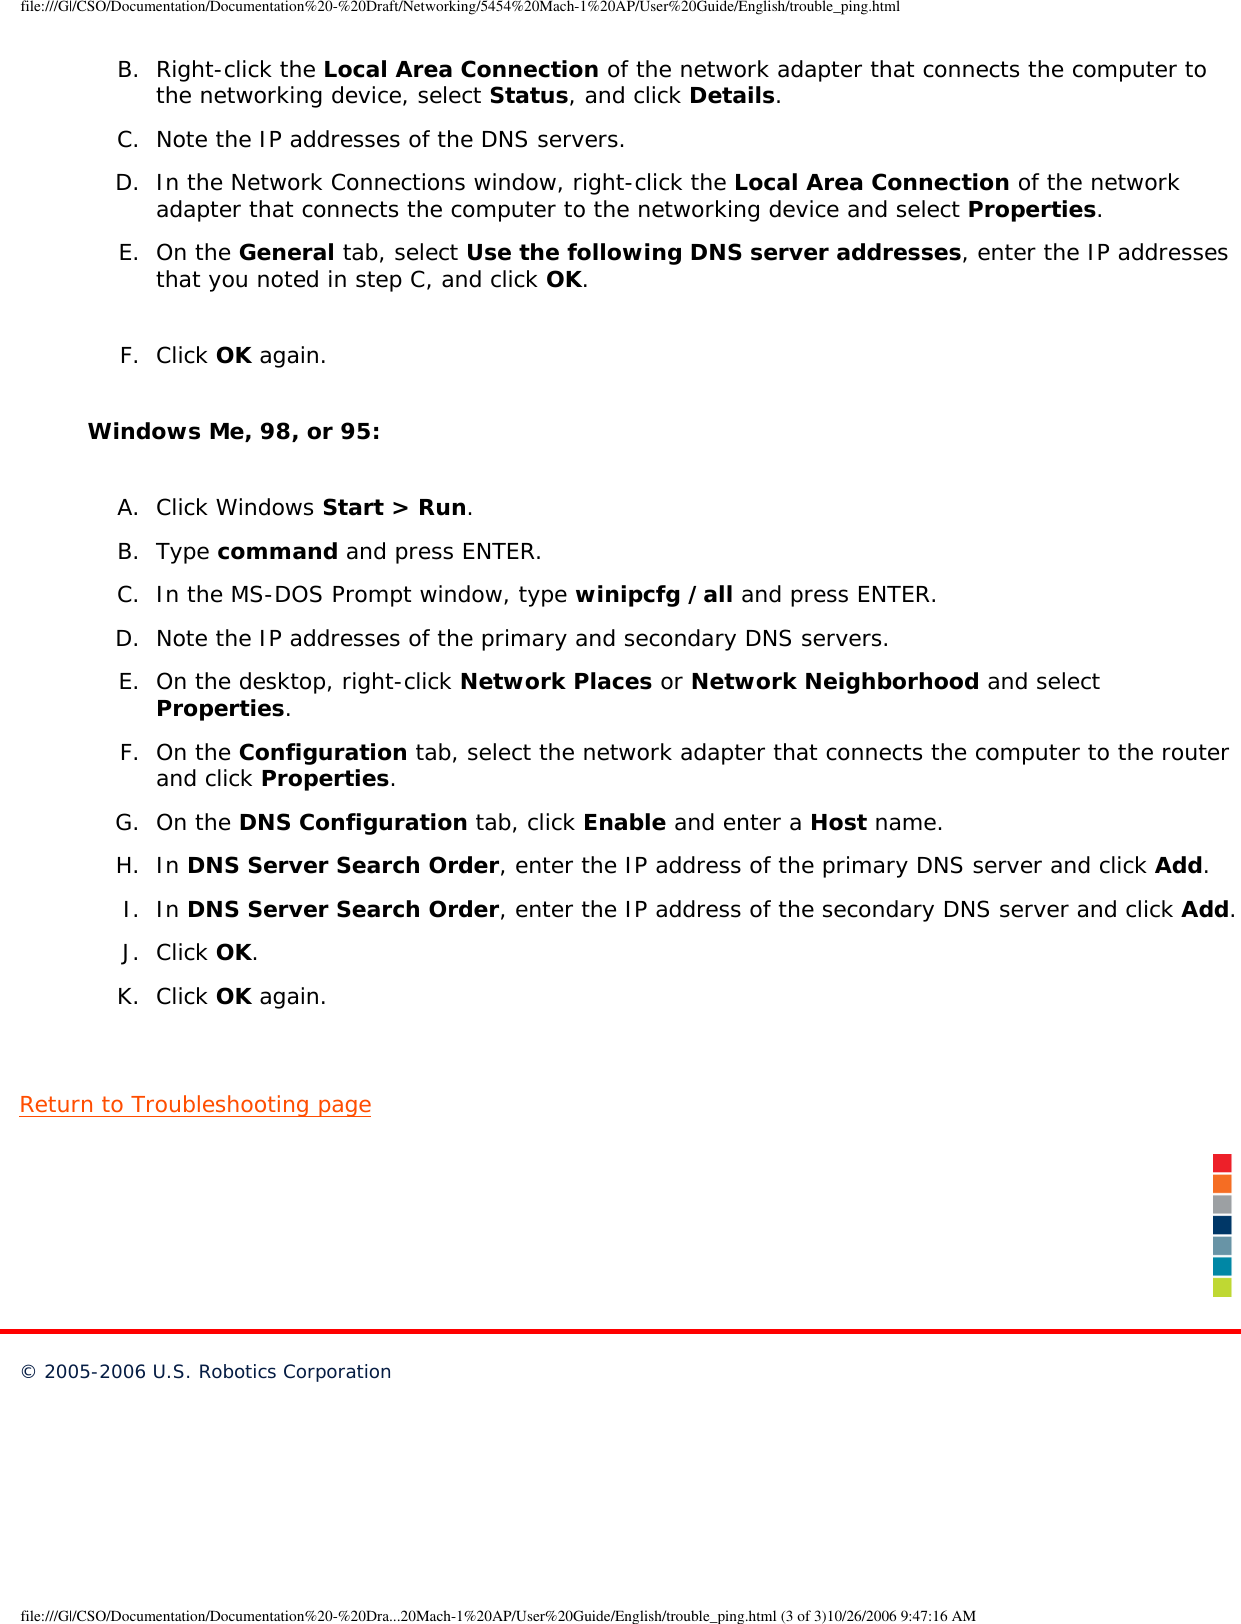 Page 107 of GemTek Technology A950630GN USRobotics Wireless Nd1 Access Point User Manual Manual